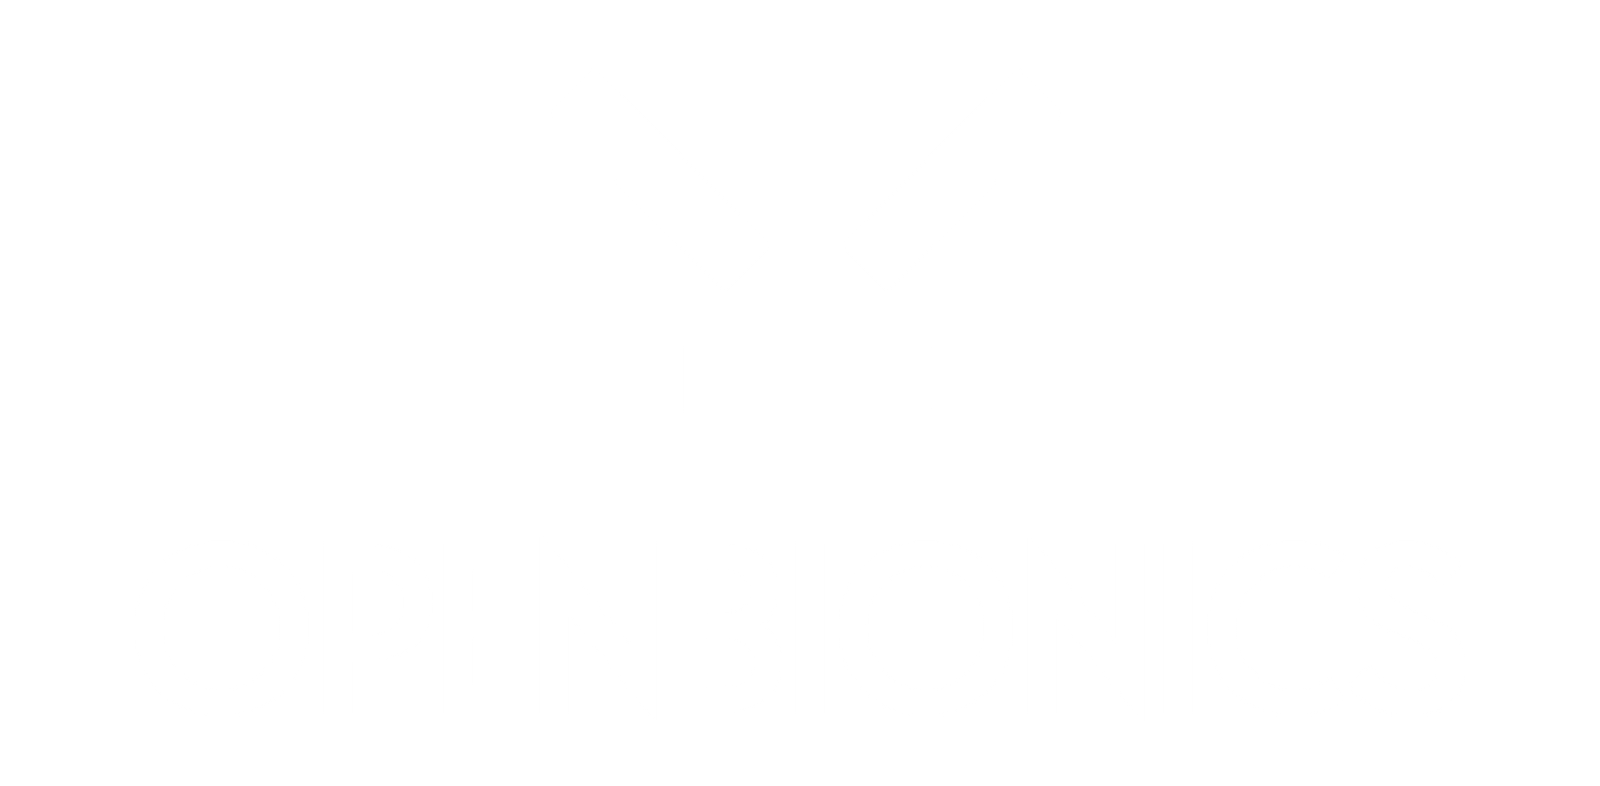 The Open Bionics logo